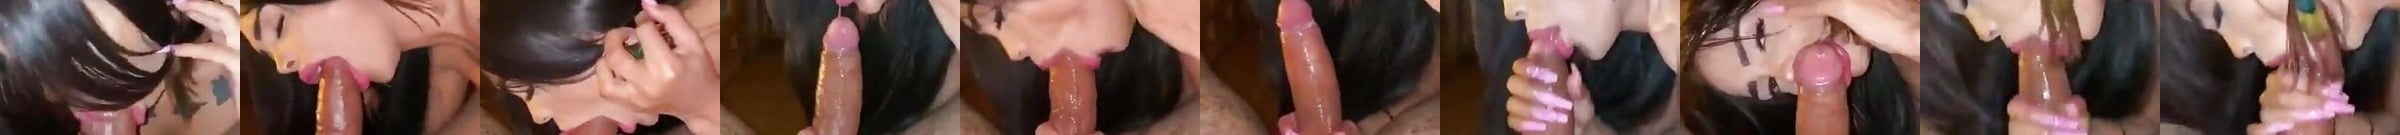 Featured Deepthroat Porn Videos 6 Xhamster